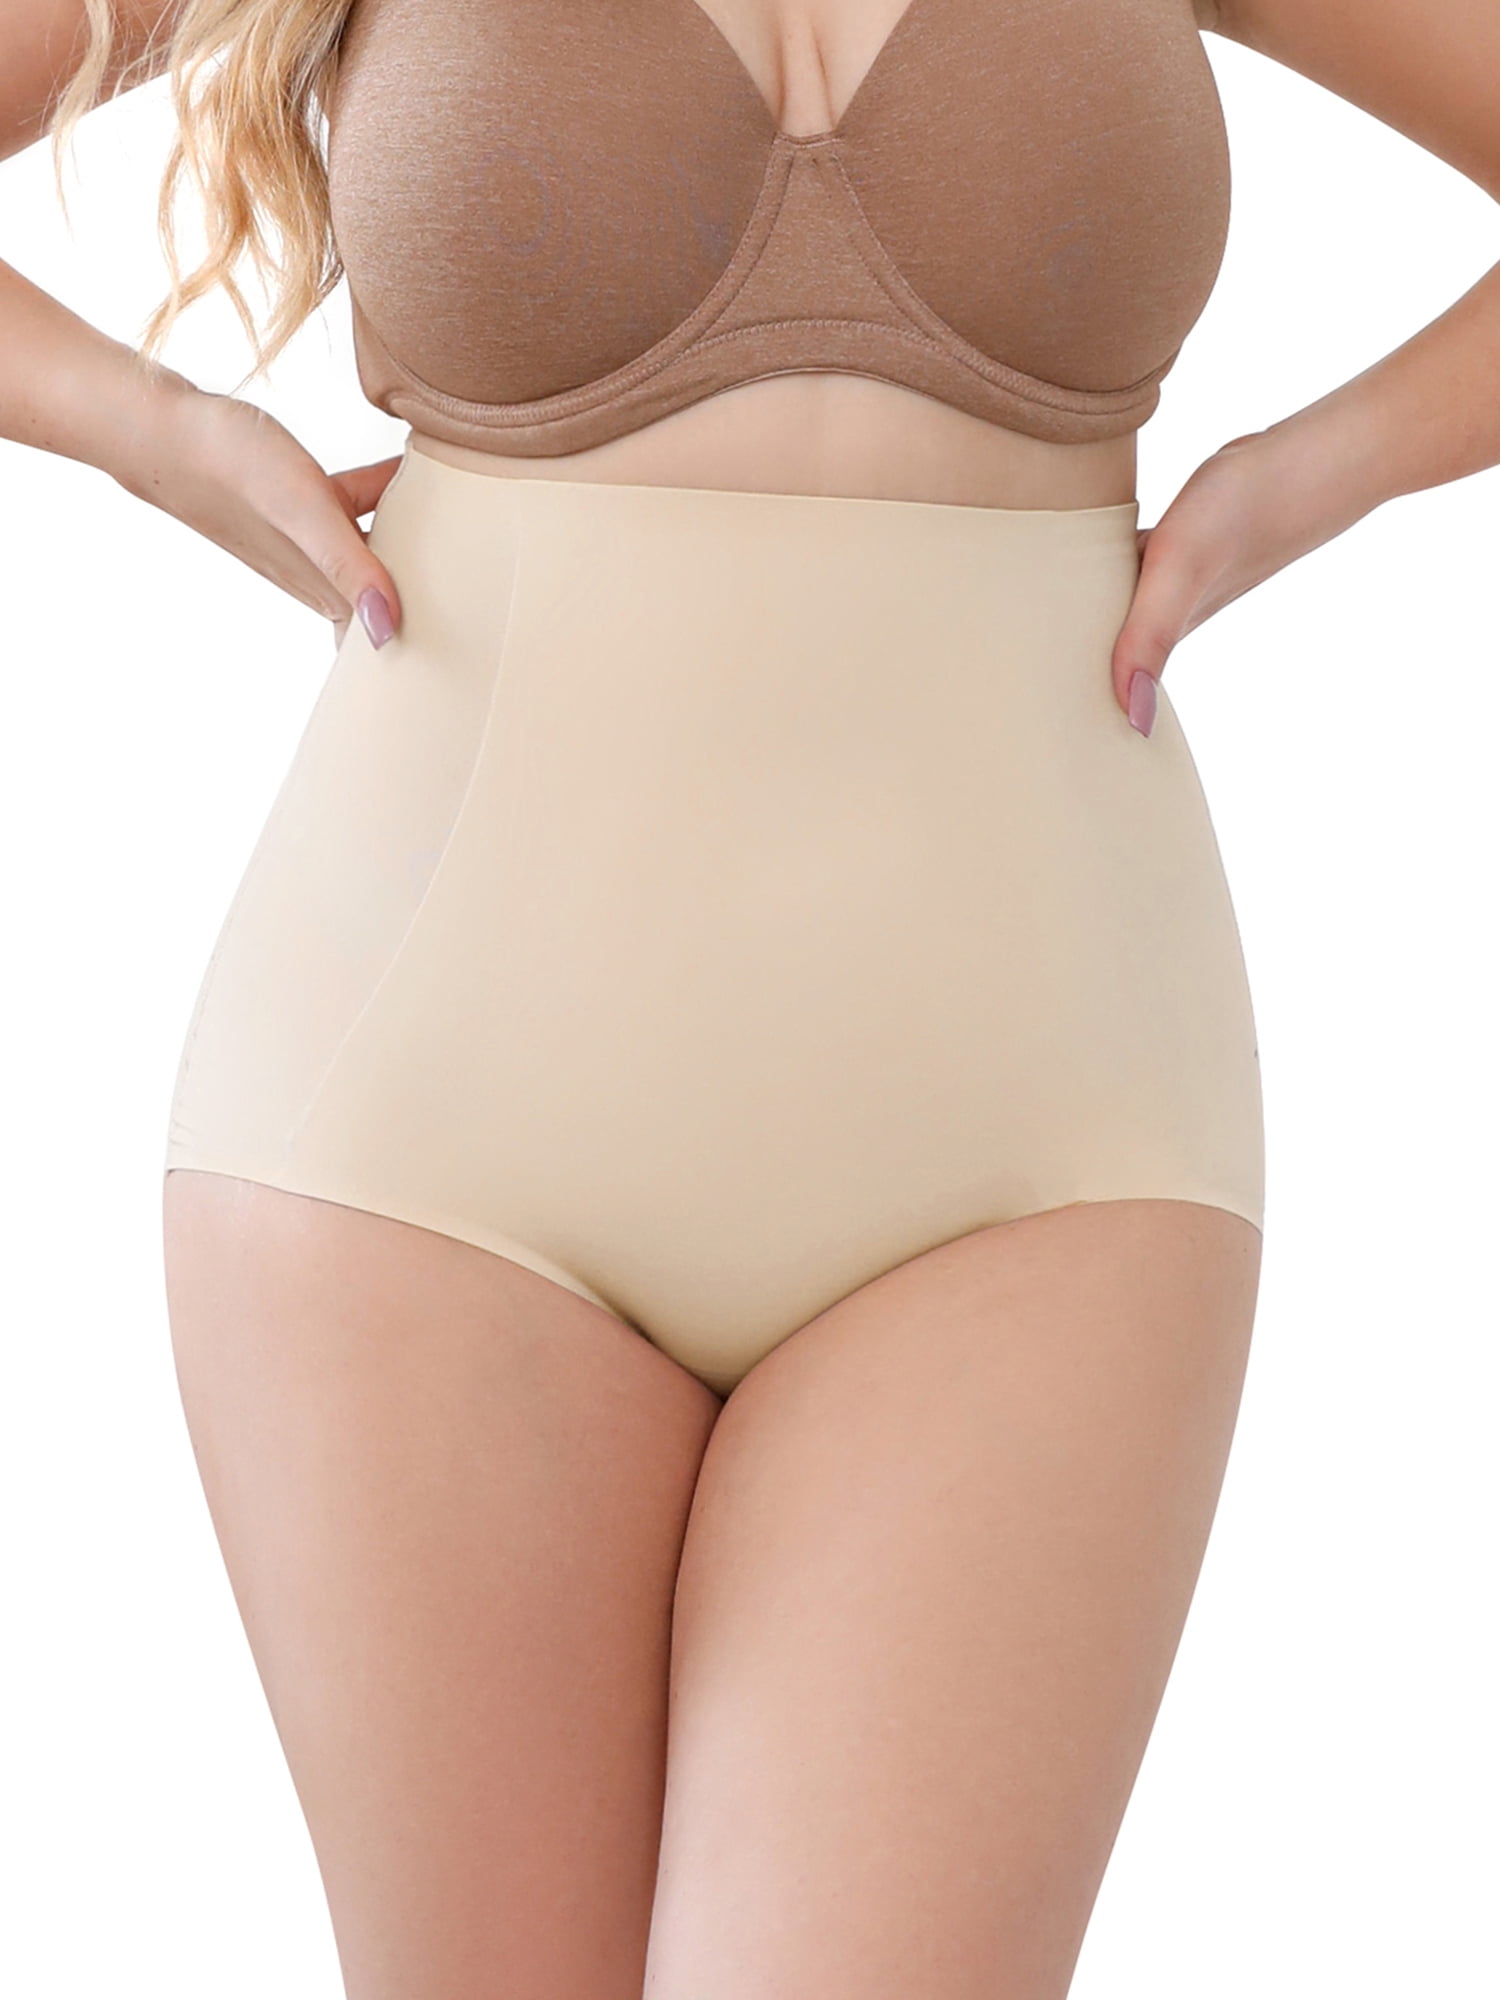 DODOING Tummy Control Underwear for Women Stomach Shapewear Panties Butt  Lifter Shapewear for Women Body Shaper Underwear Waist Trainer Girdle  Slimmer 